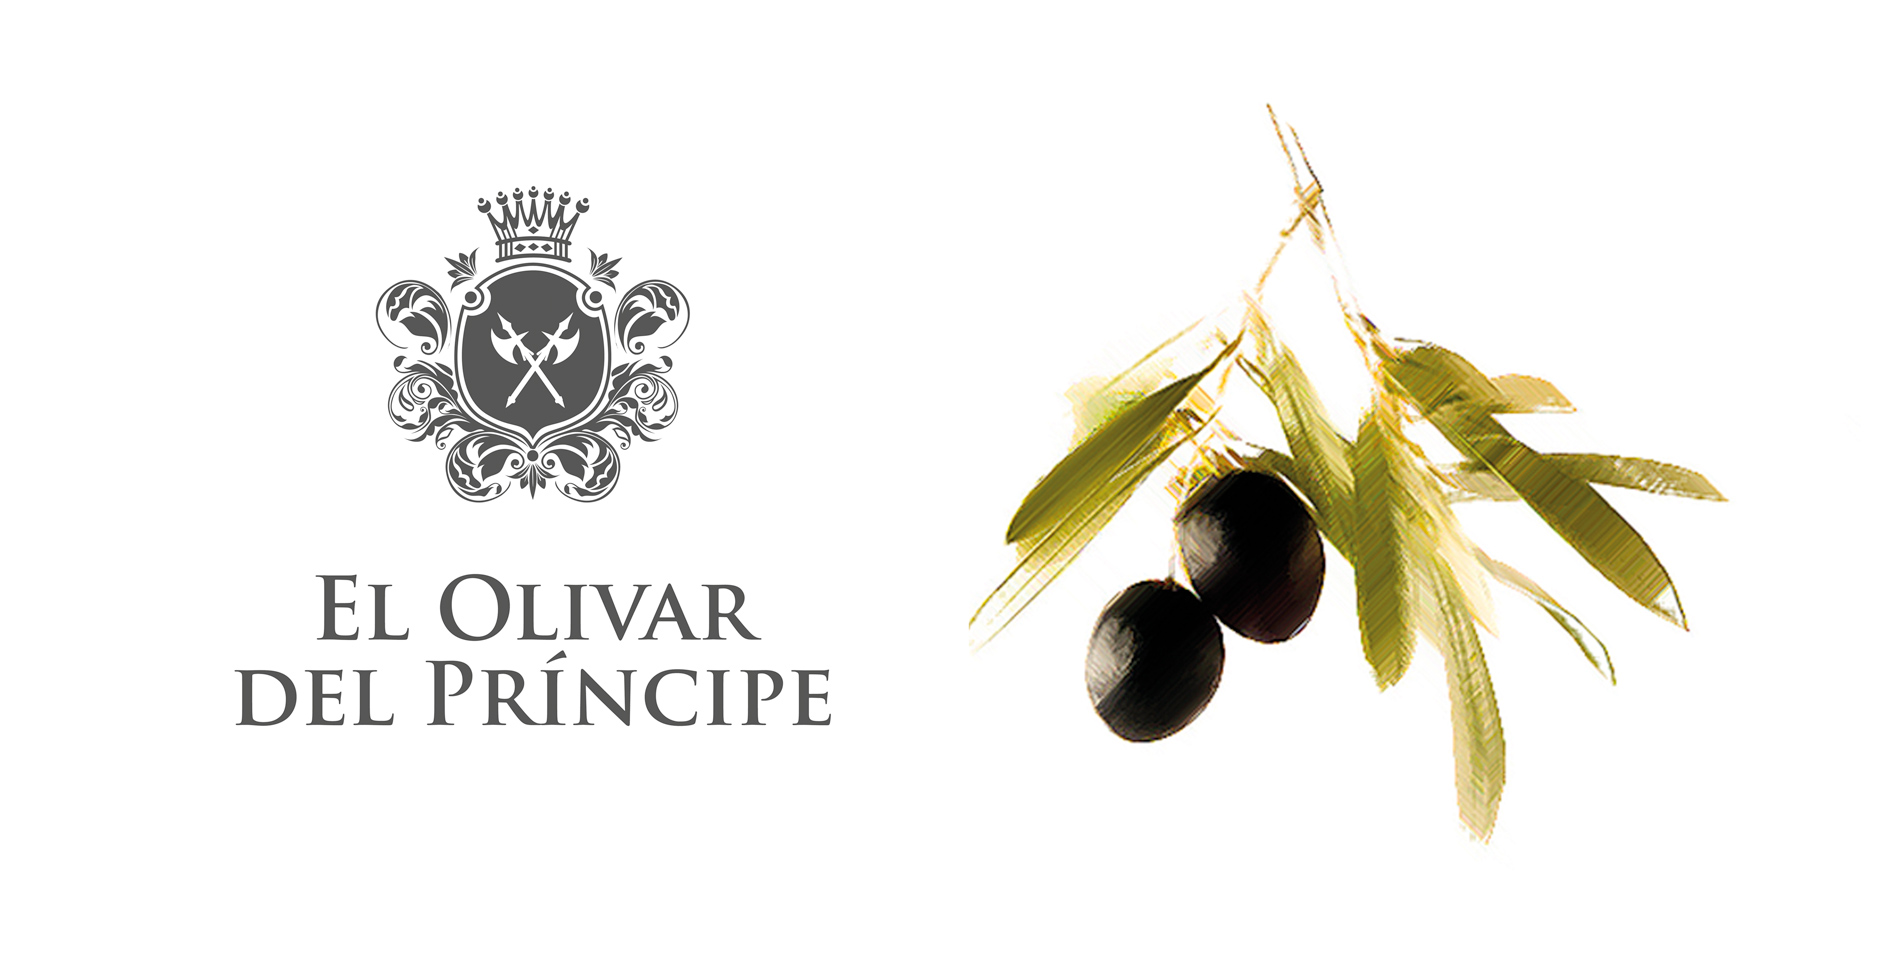 Diseño gráfico y creativo de etiquetas de aceite de oliva virgen extra para la marca El Olivar del Principe